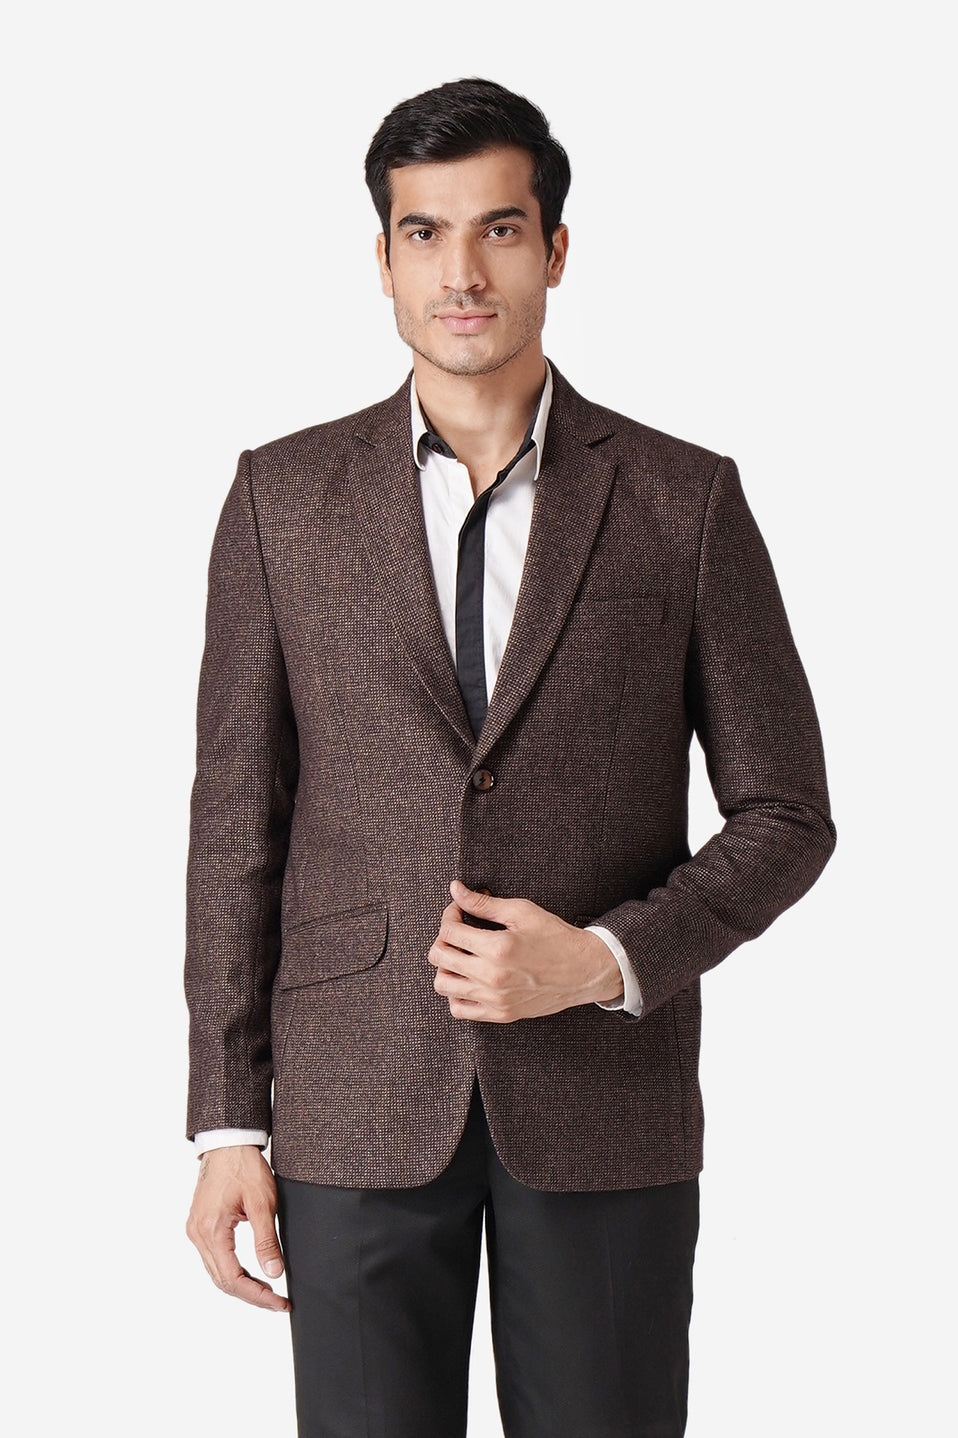 WINTAGE Men's Tweed Casual and Festive Blazer Coat Jacket: Dark Brown Dark Brown / 46 / 2X-Large